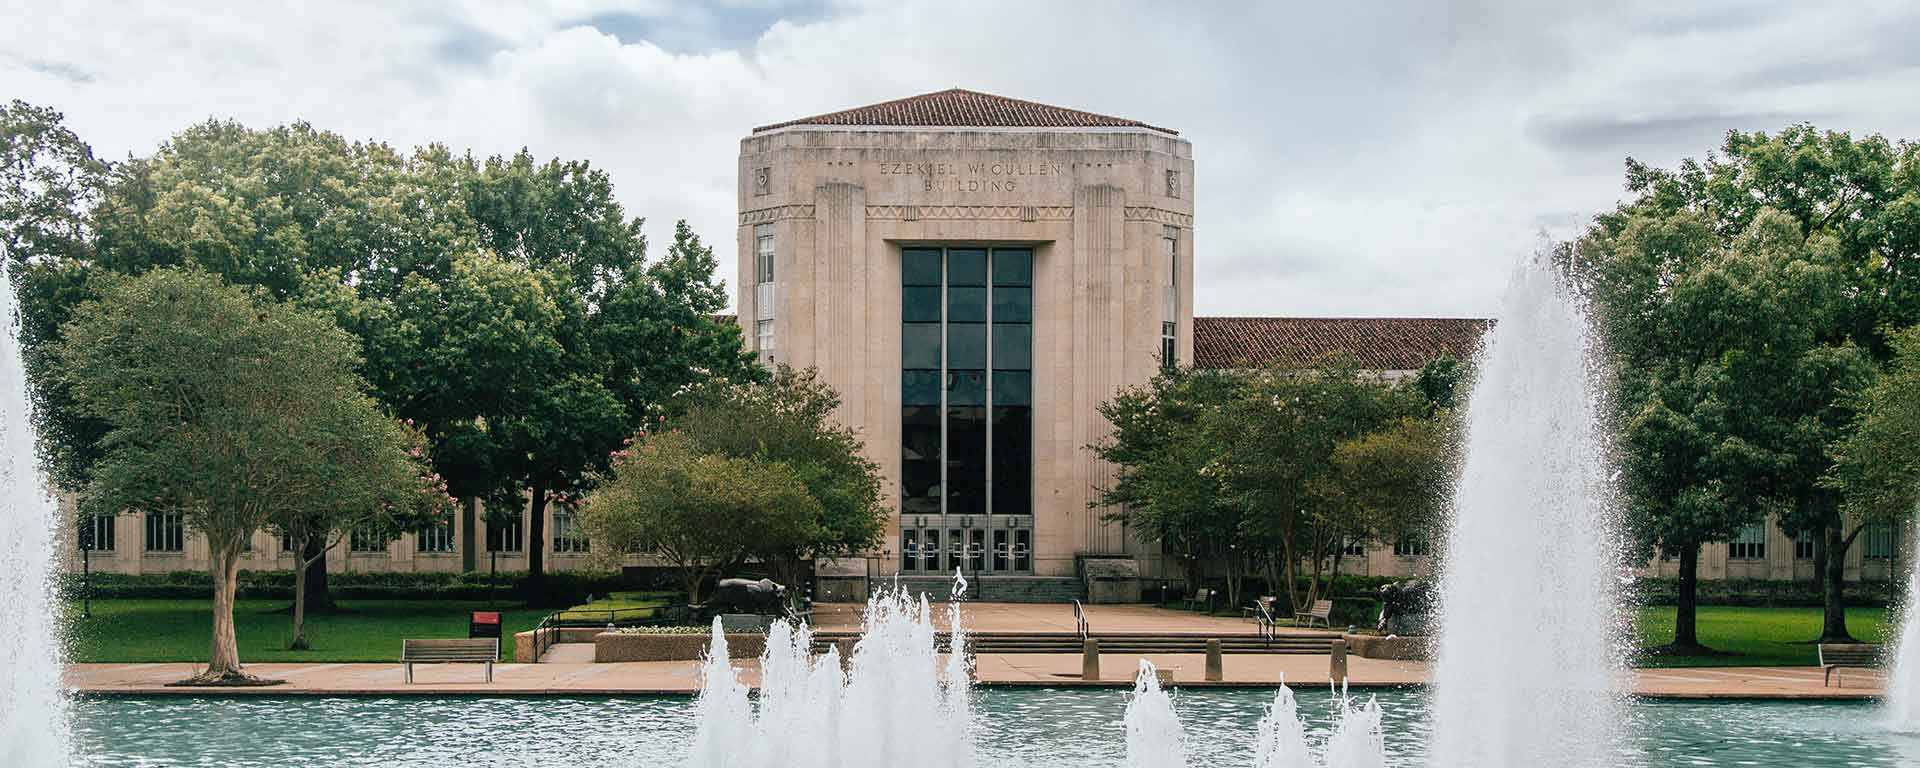 About University of Houston - University of Houston